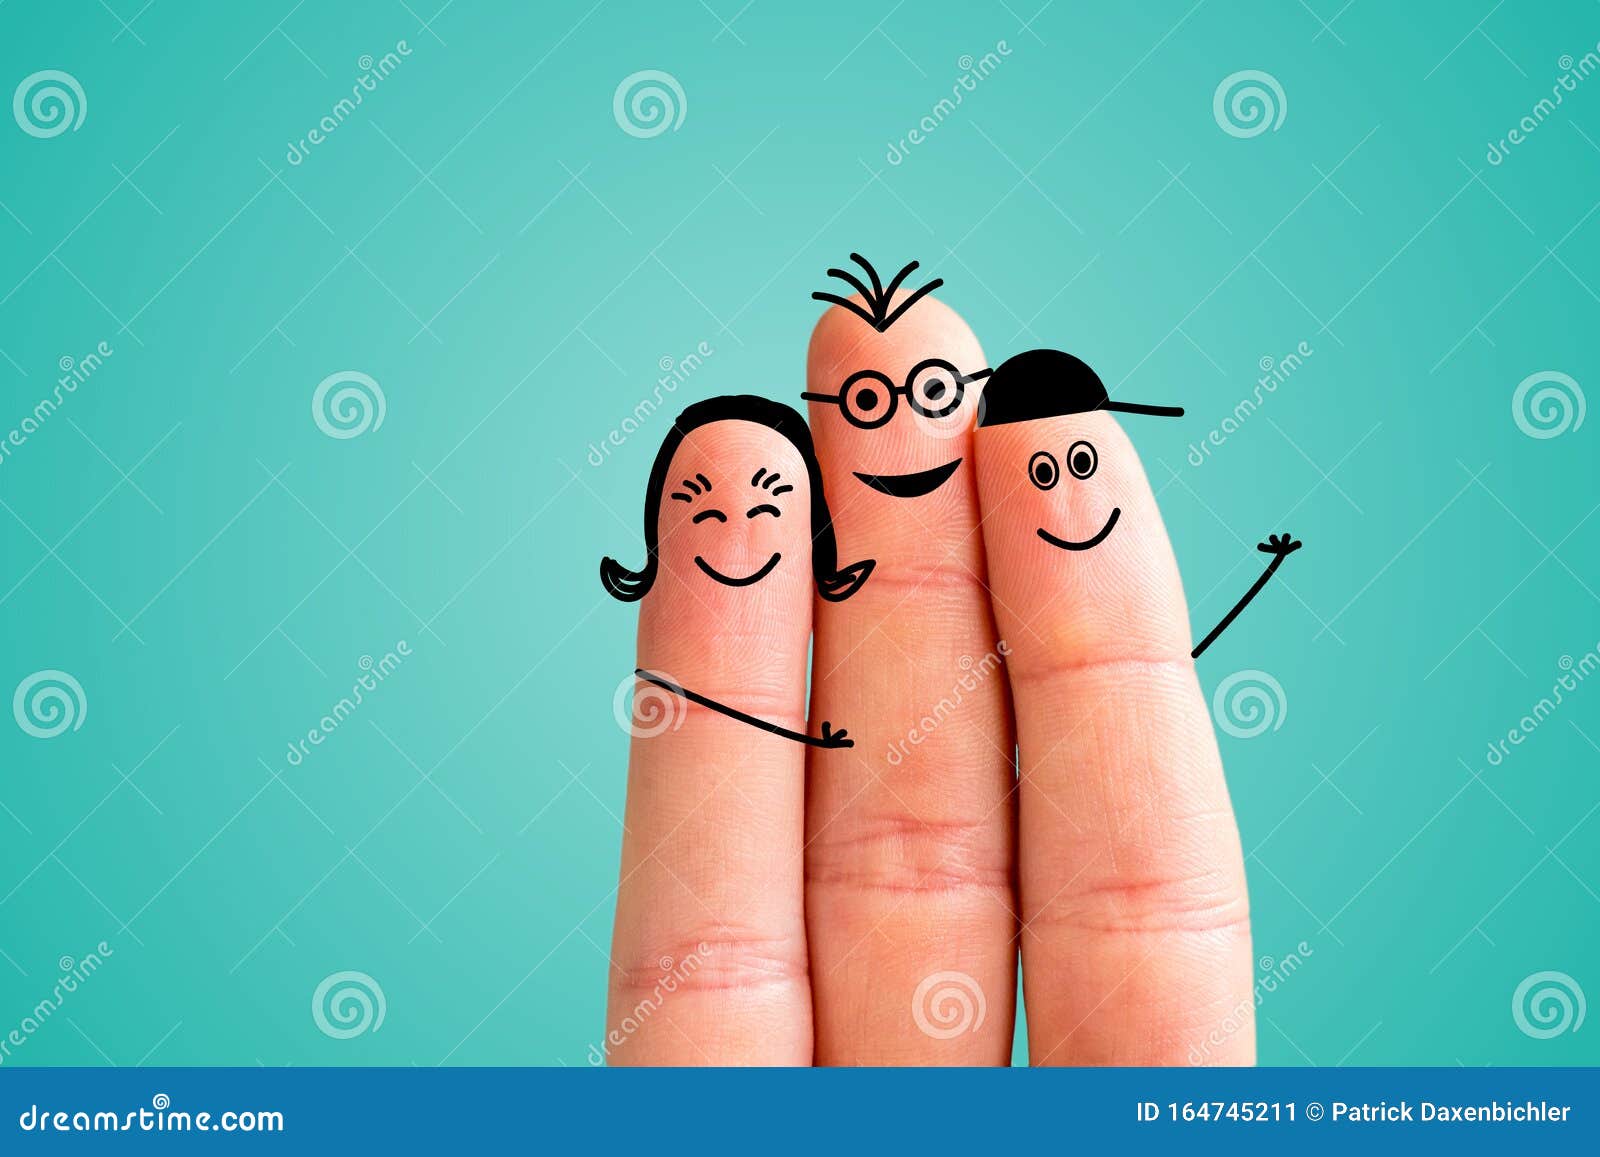 Finger Family Concept: Joyful Finger Family Smiling. Blue ...